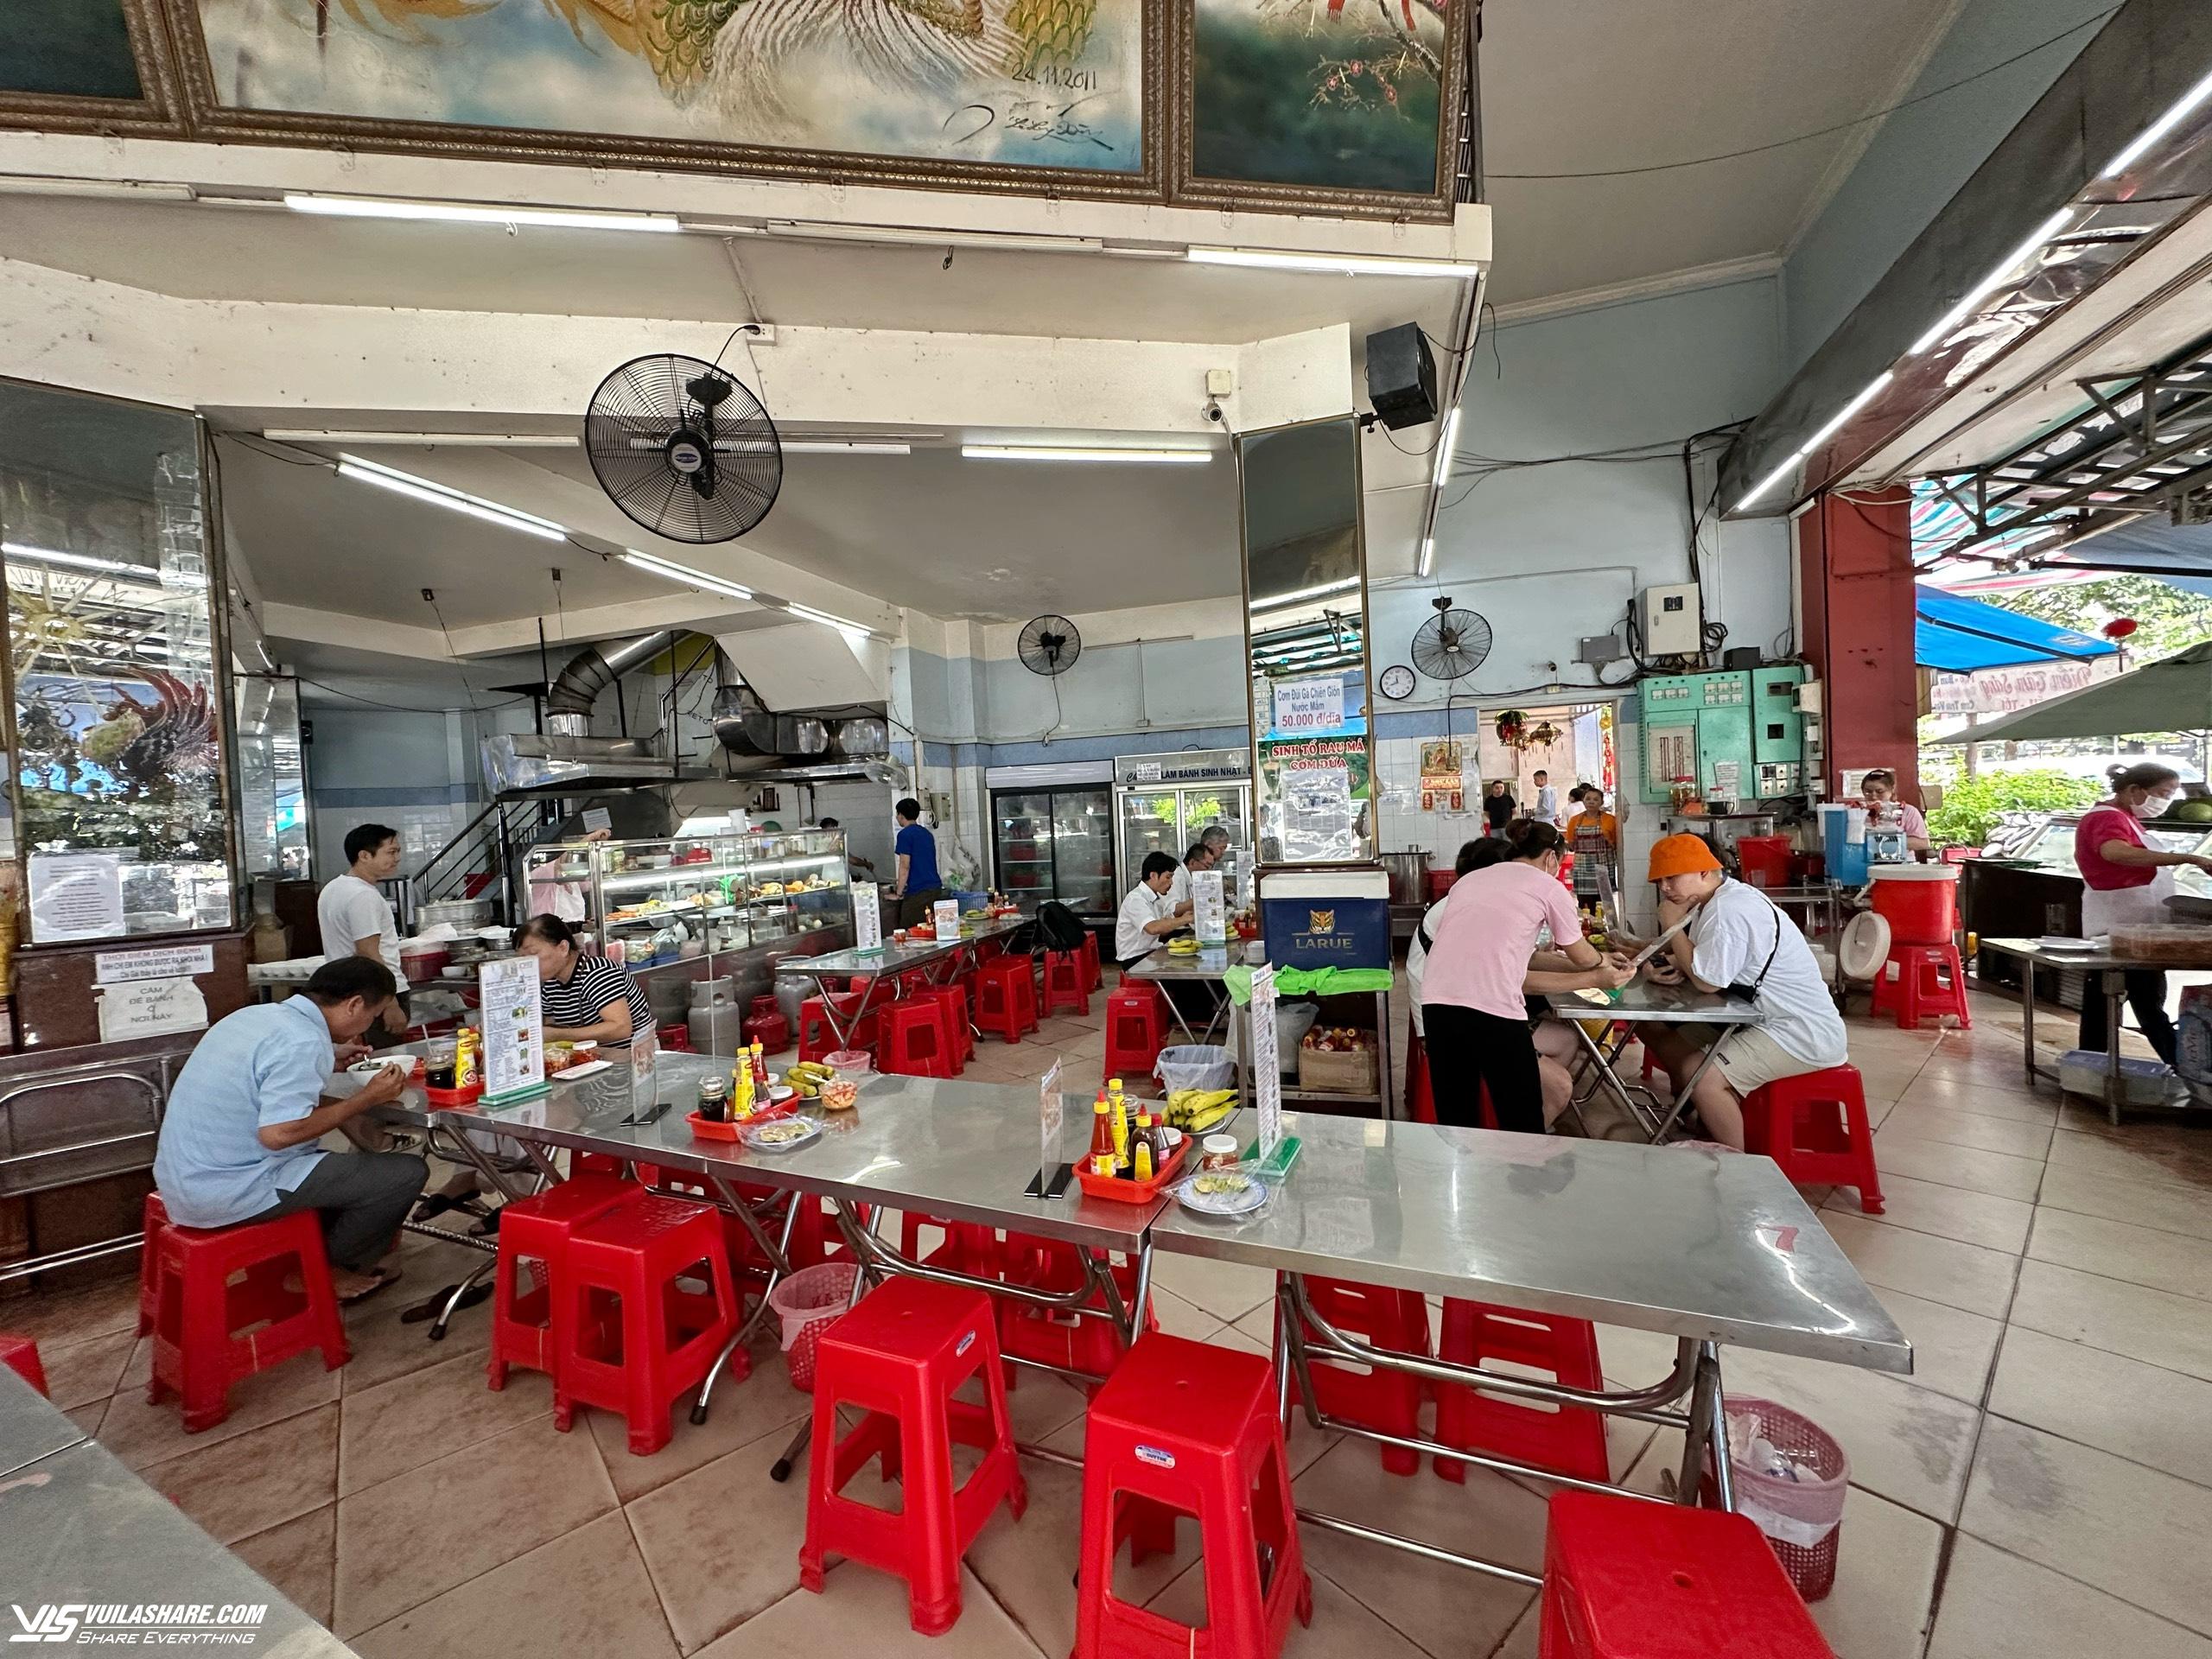 Hôm nay Michelin Guide công bố danh sách quán ăn ở Việt Nam: Bánh mì liệu có đánh rớt như 2023?- Ảnh 6.